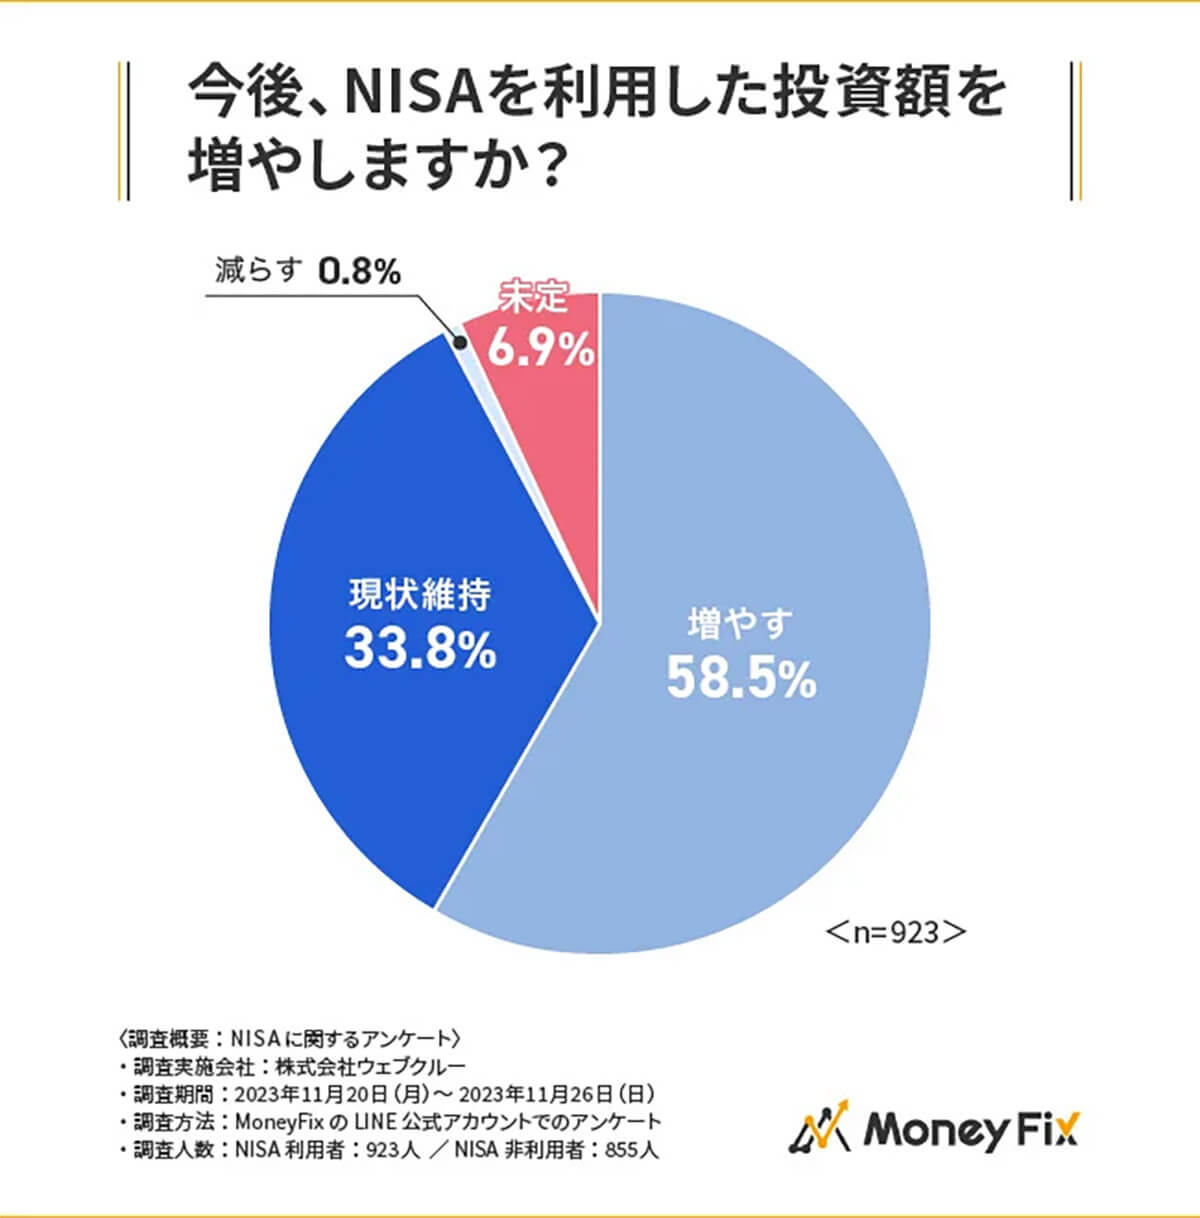 今後、NISAを利用した投資額を増やしますか？